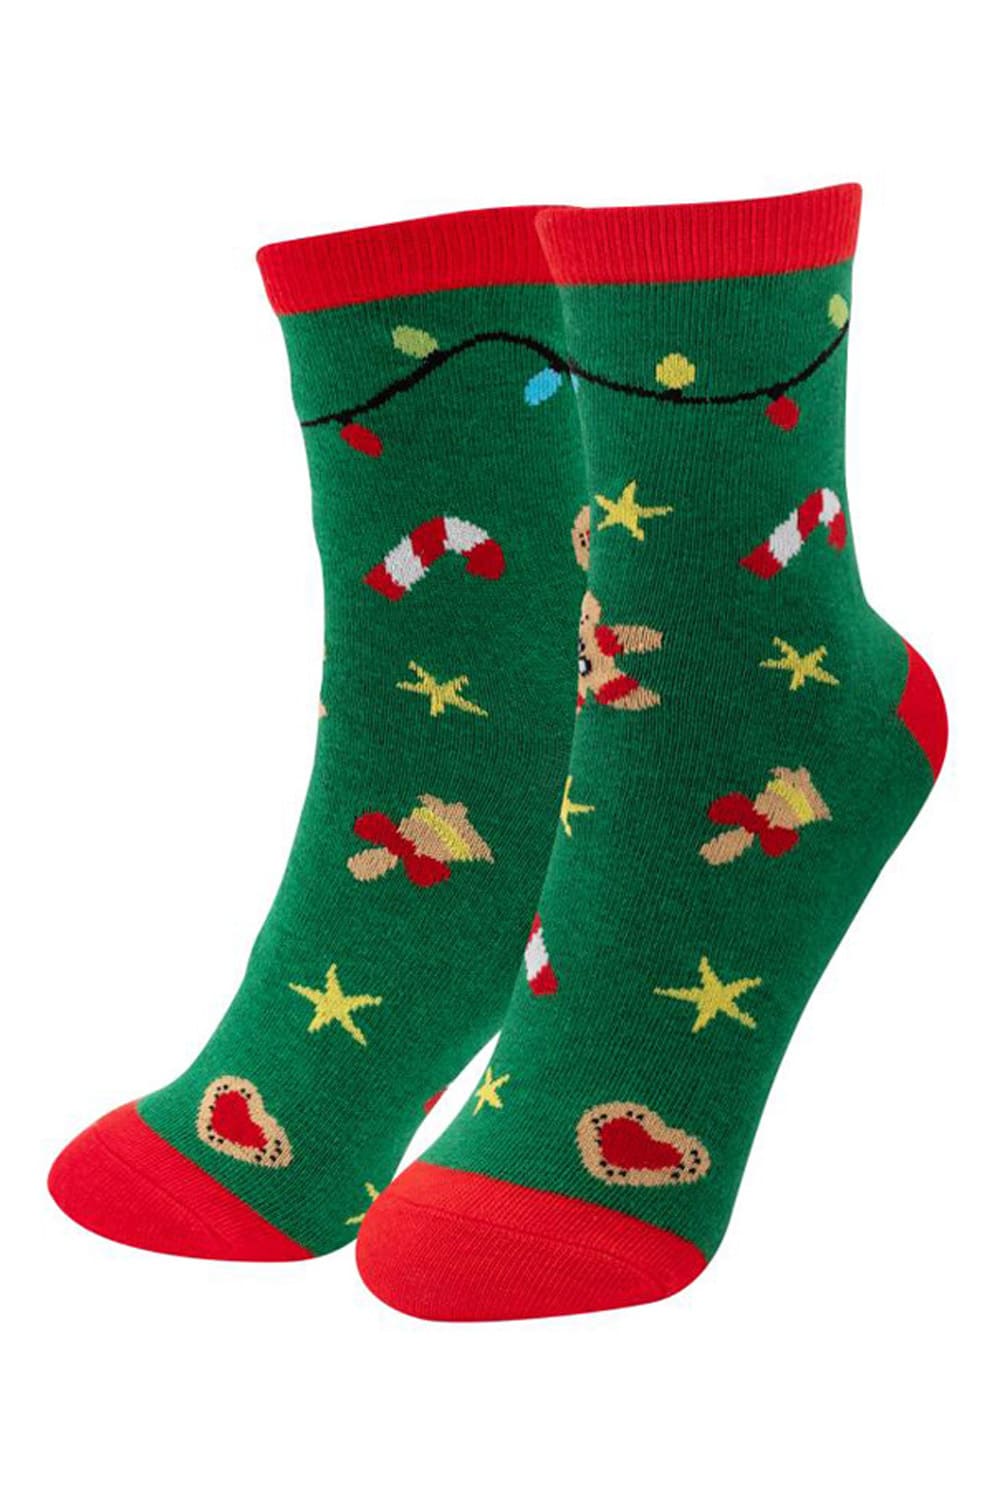 Diese Zaubersocken sind ein witziges Geschenk zu Weihnachten! Die Socken 15 Minuten ins Wasser legen bis sich die Socken vollstaendig entfaltet haben. Weihnachtliche Socken mit Weihnachtsmotiv (Zuckerstange, Gloeckchen, Stern, Lechkuchenmann usw.). Ausserdem sind die Socken in Lebkuchen Maennchen-Form gepresst. 